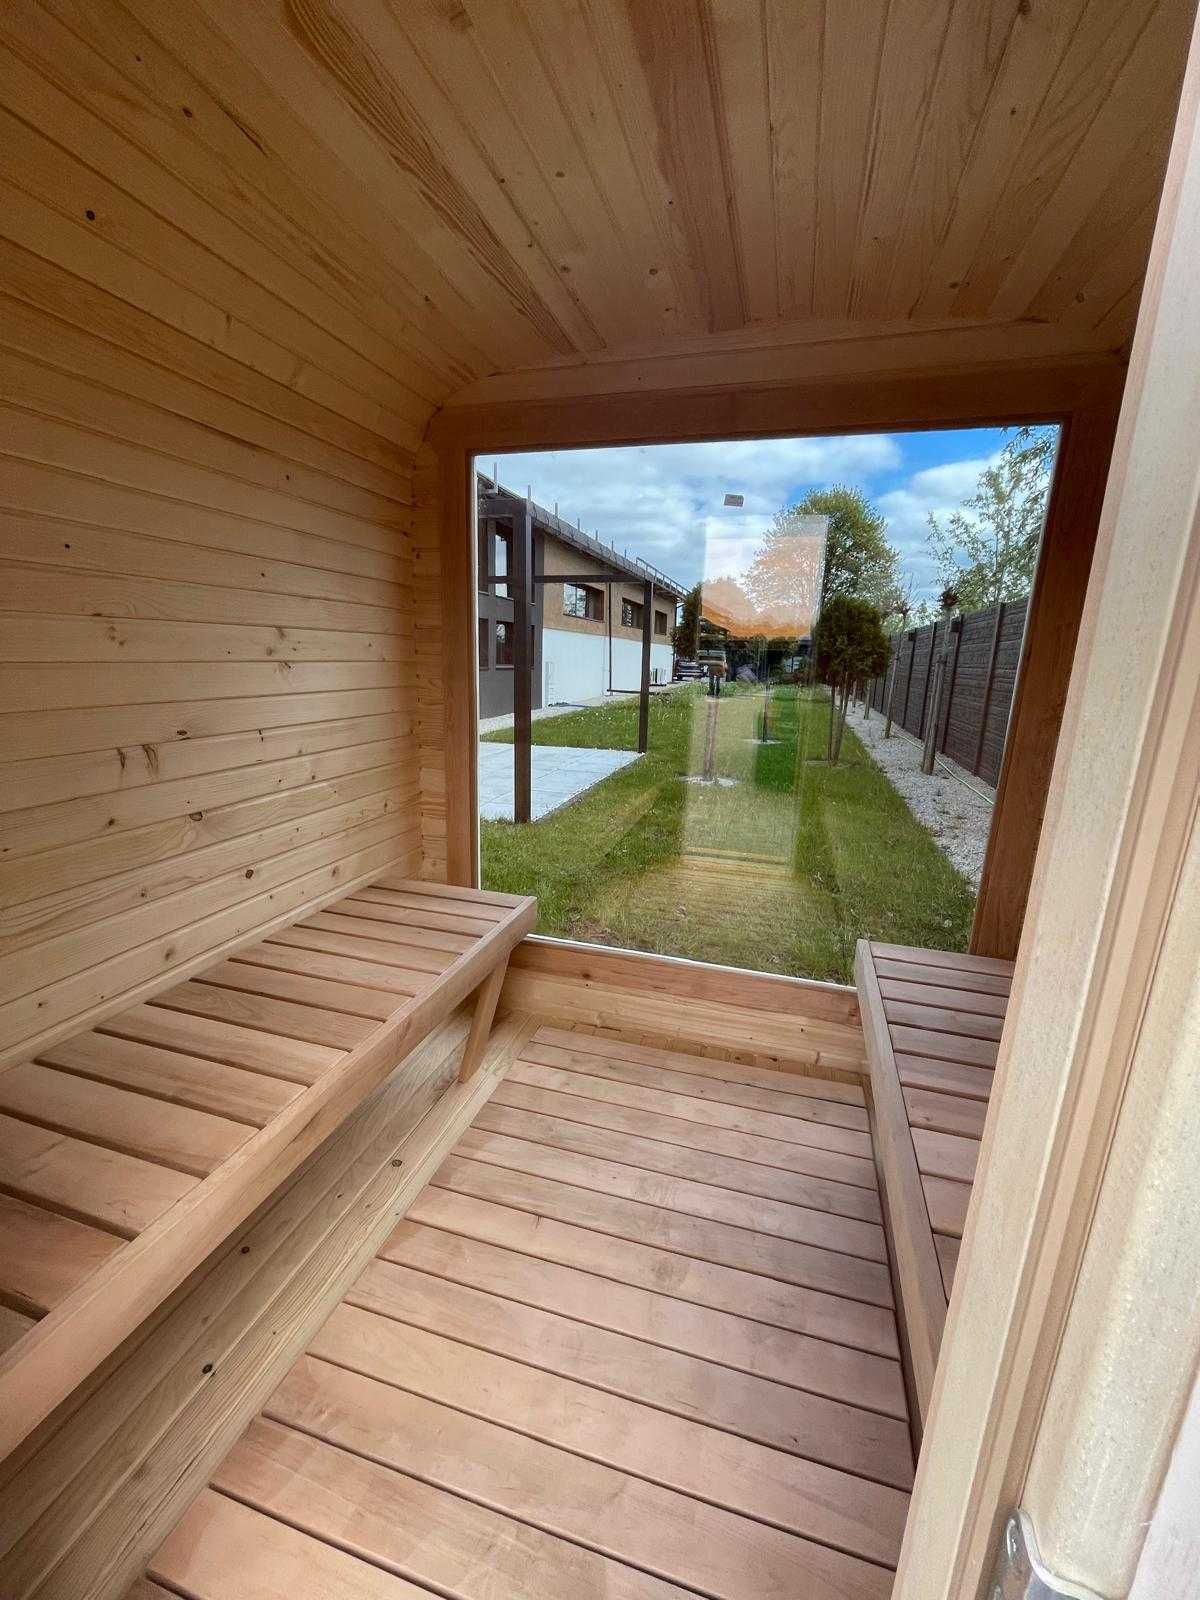 Sauna ogrodowa kwadro beczka 2mx2m duże okno Panorama dostępna od RĘKI